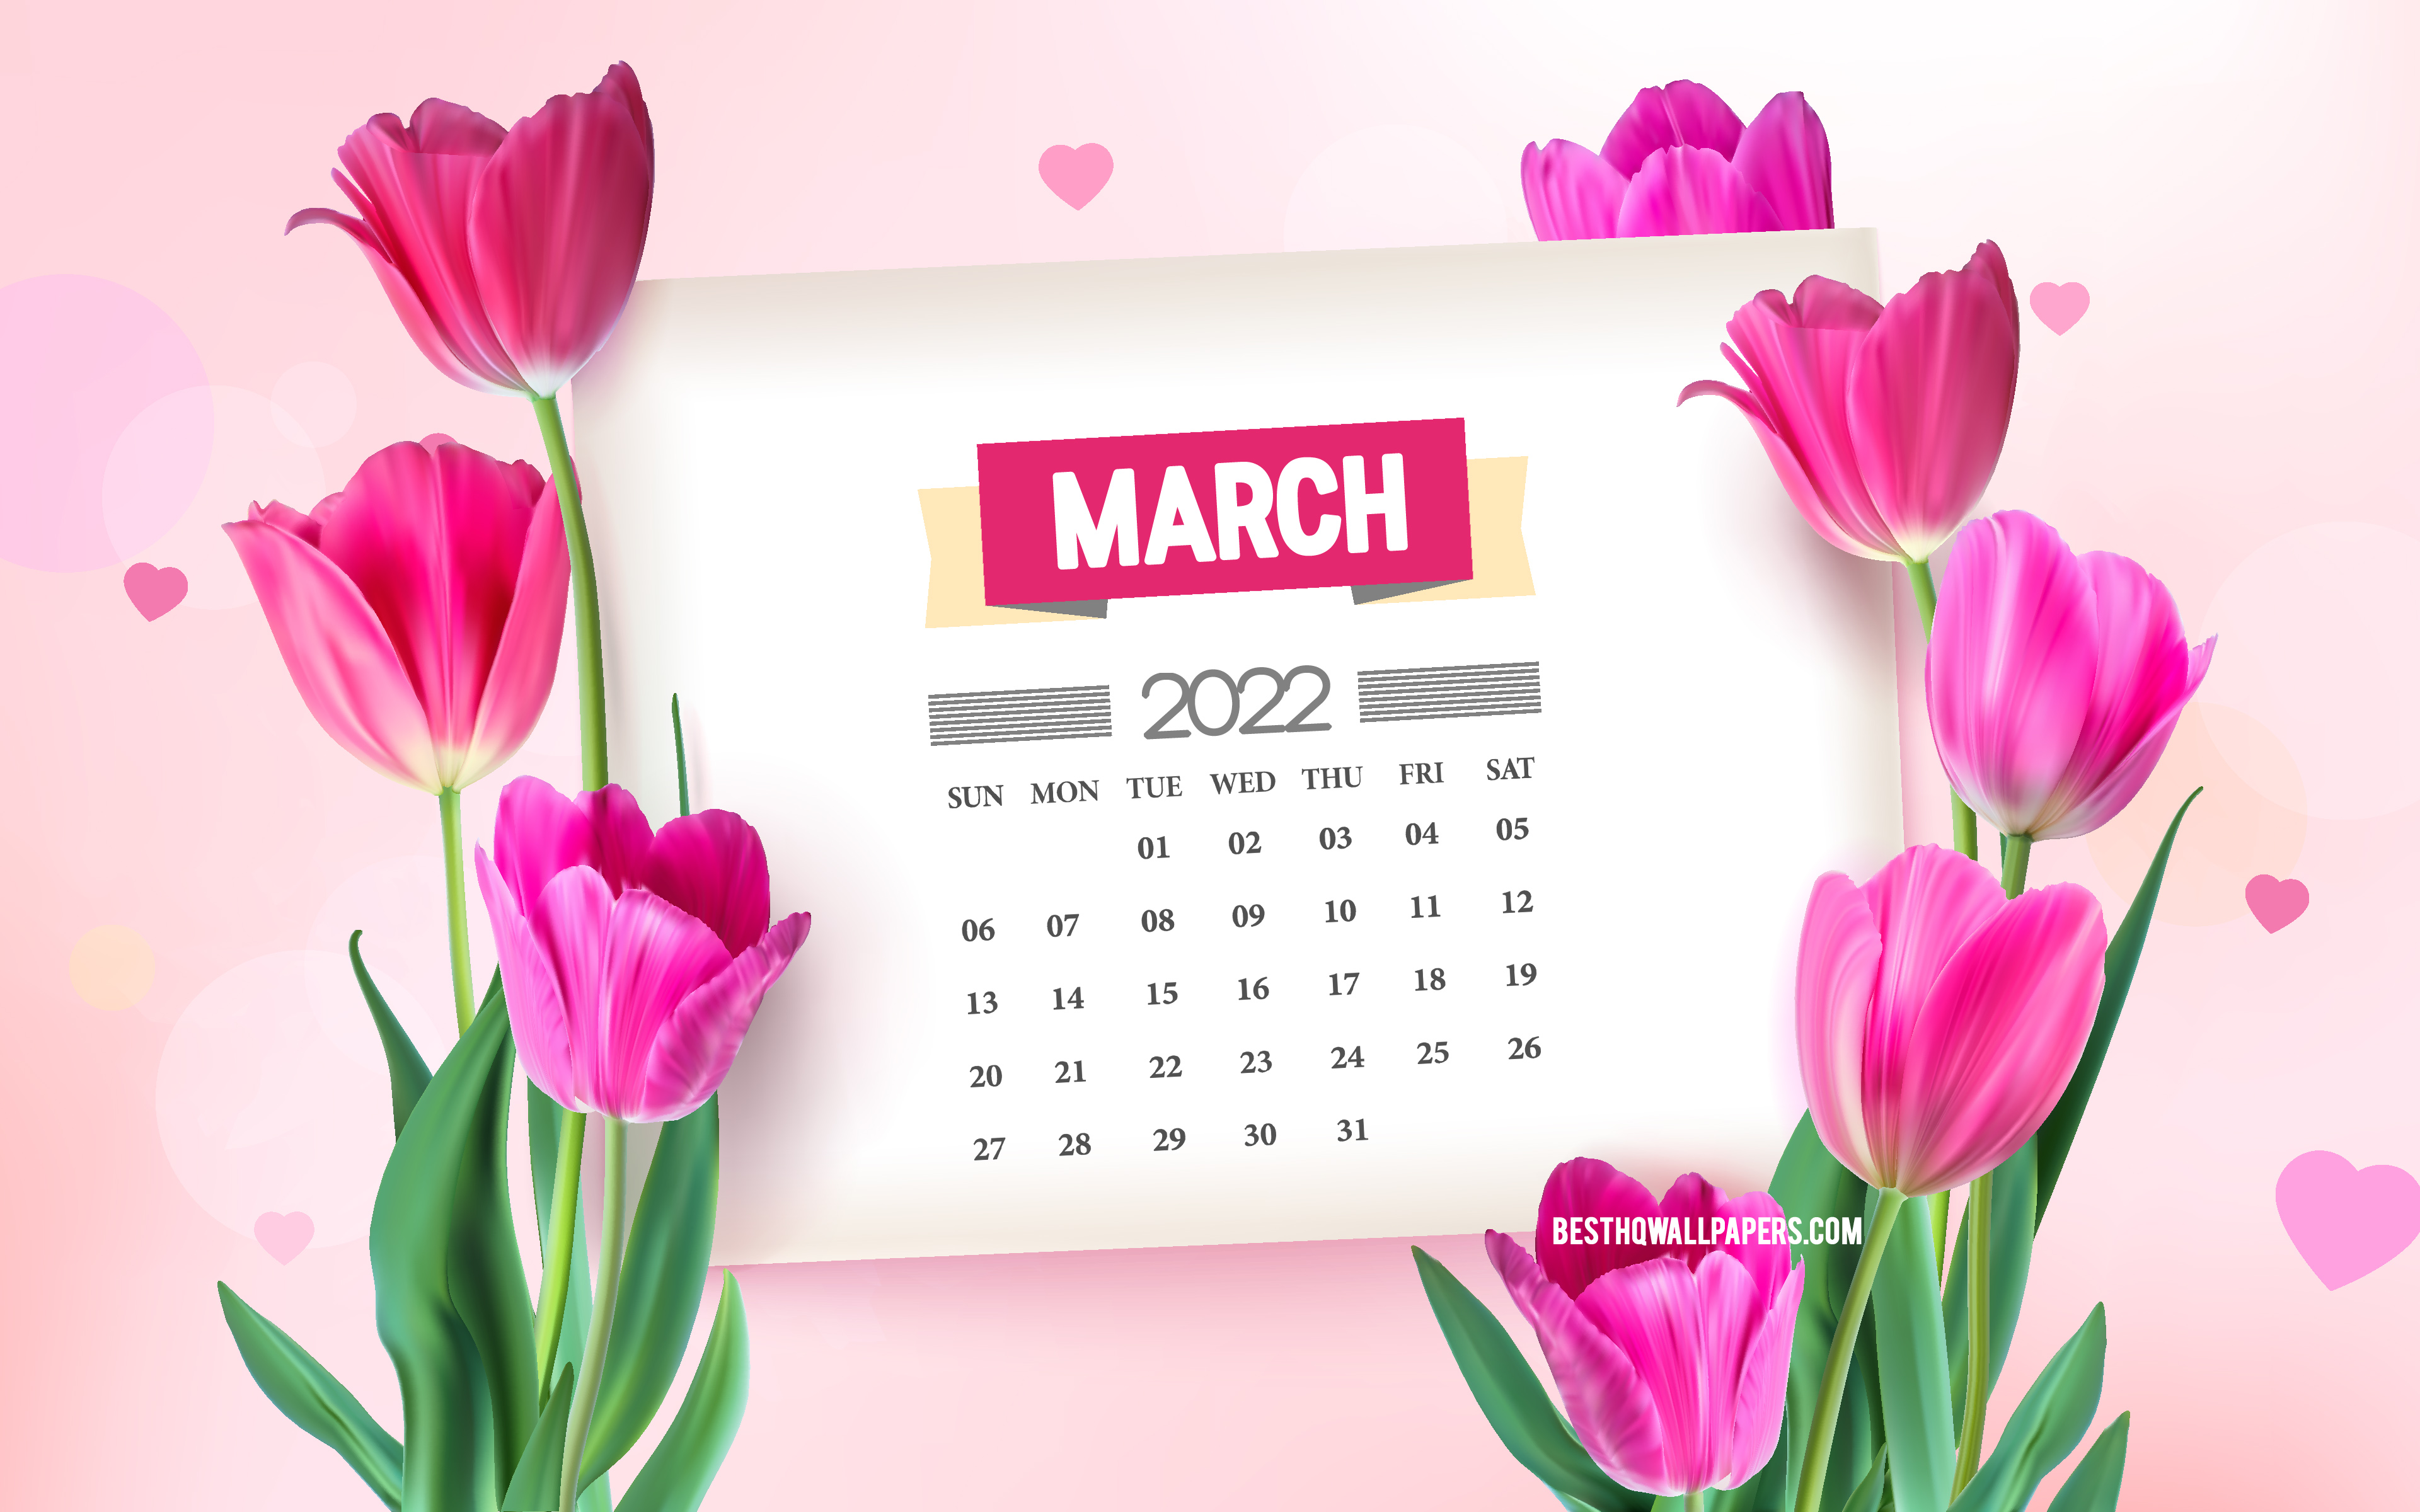 Hình nền tháng 3/2022 với hoa tulip hồng mang đến sự tươi mới và tinh tế cho màn hình thiết bị của bạn. Hoa tulip tượng trưng cho tình yêu và sự lãng mạn, giúp bạn đánh thức những cảm xúc tươi trẻ qua từng ngày. Hãy khám phá một mùa xuân mới trên màn hình của bạn với hình nền tháng 3/2022 này.